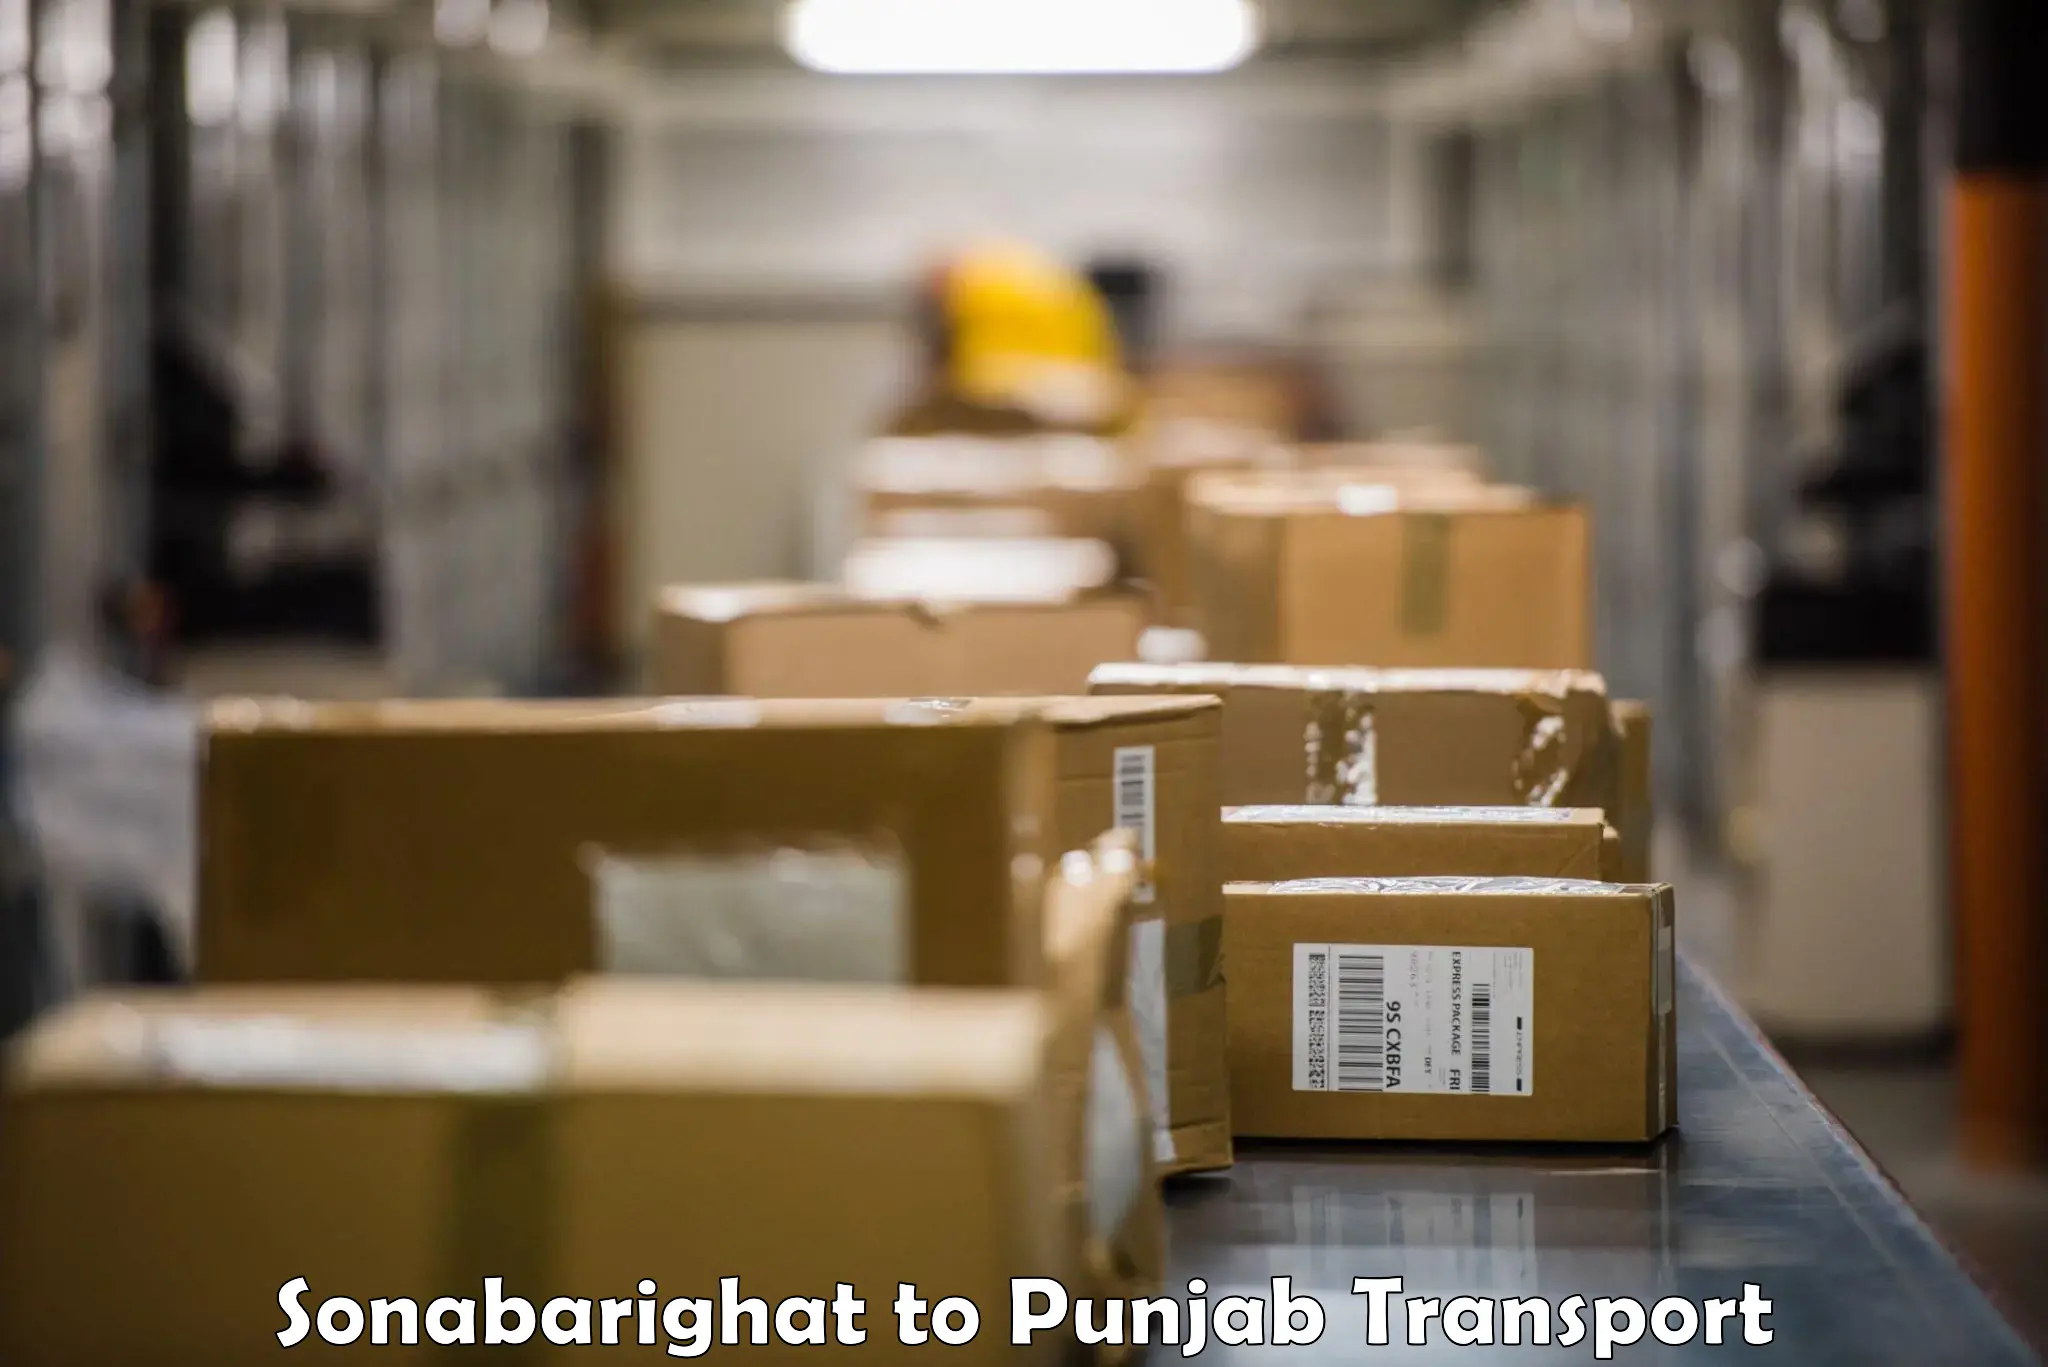 Furniture transport service Sonabarighat to Jalandhar